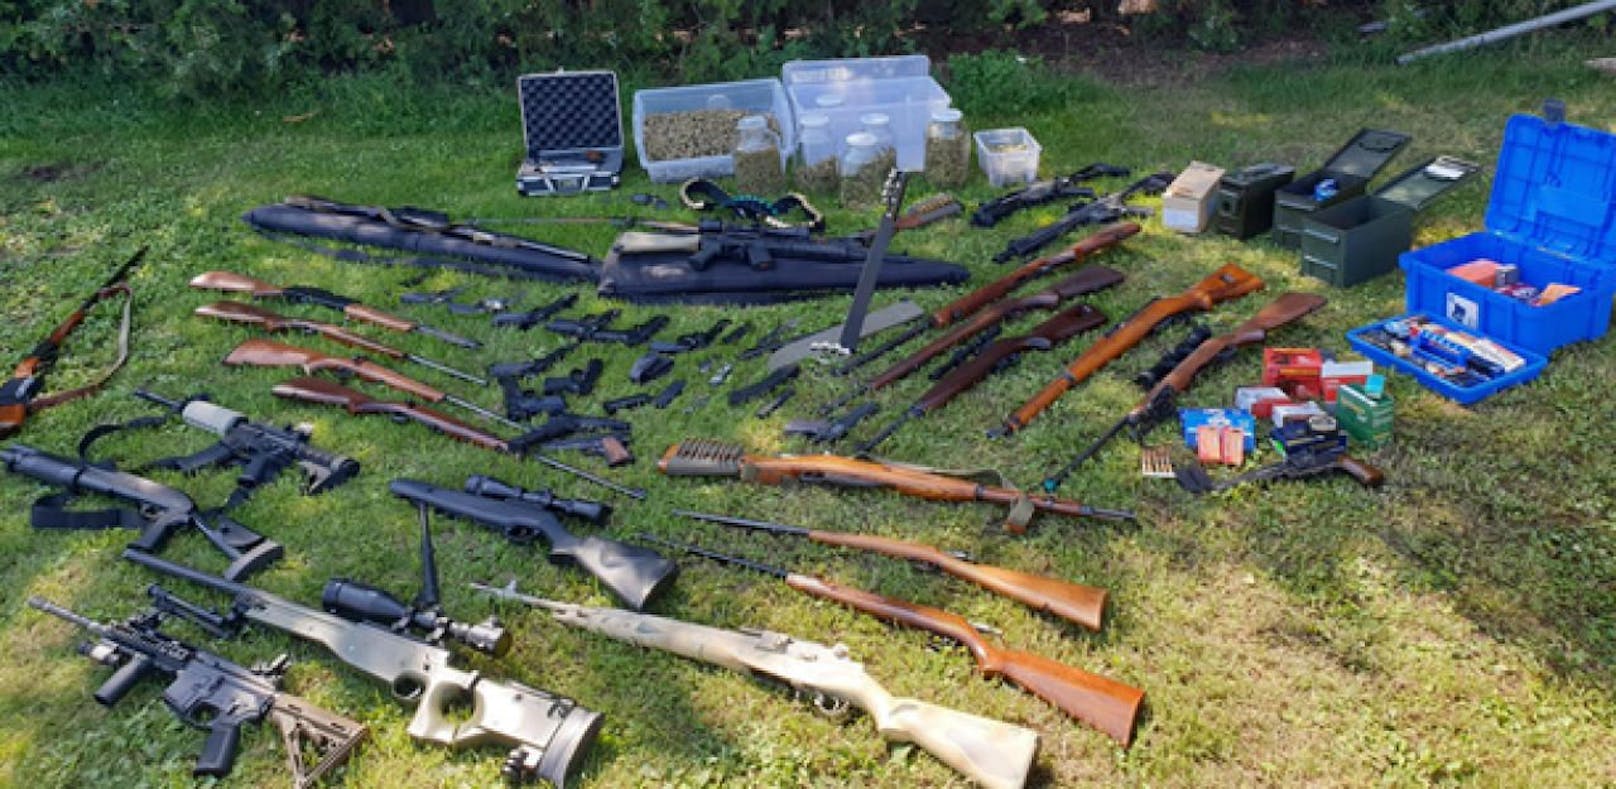 Bei dem Drogenbaron wurde ein Arsenal von 49 großteils illegalen Schusswaffen sichergestellt.